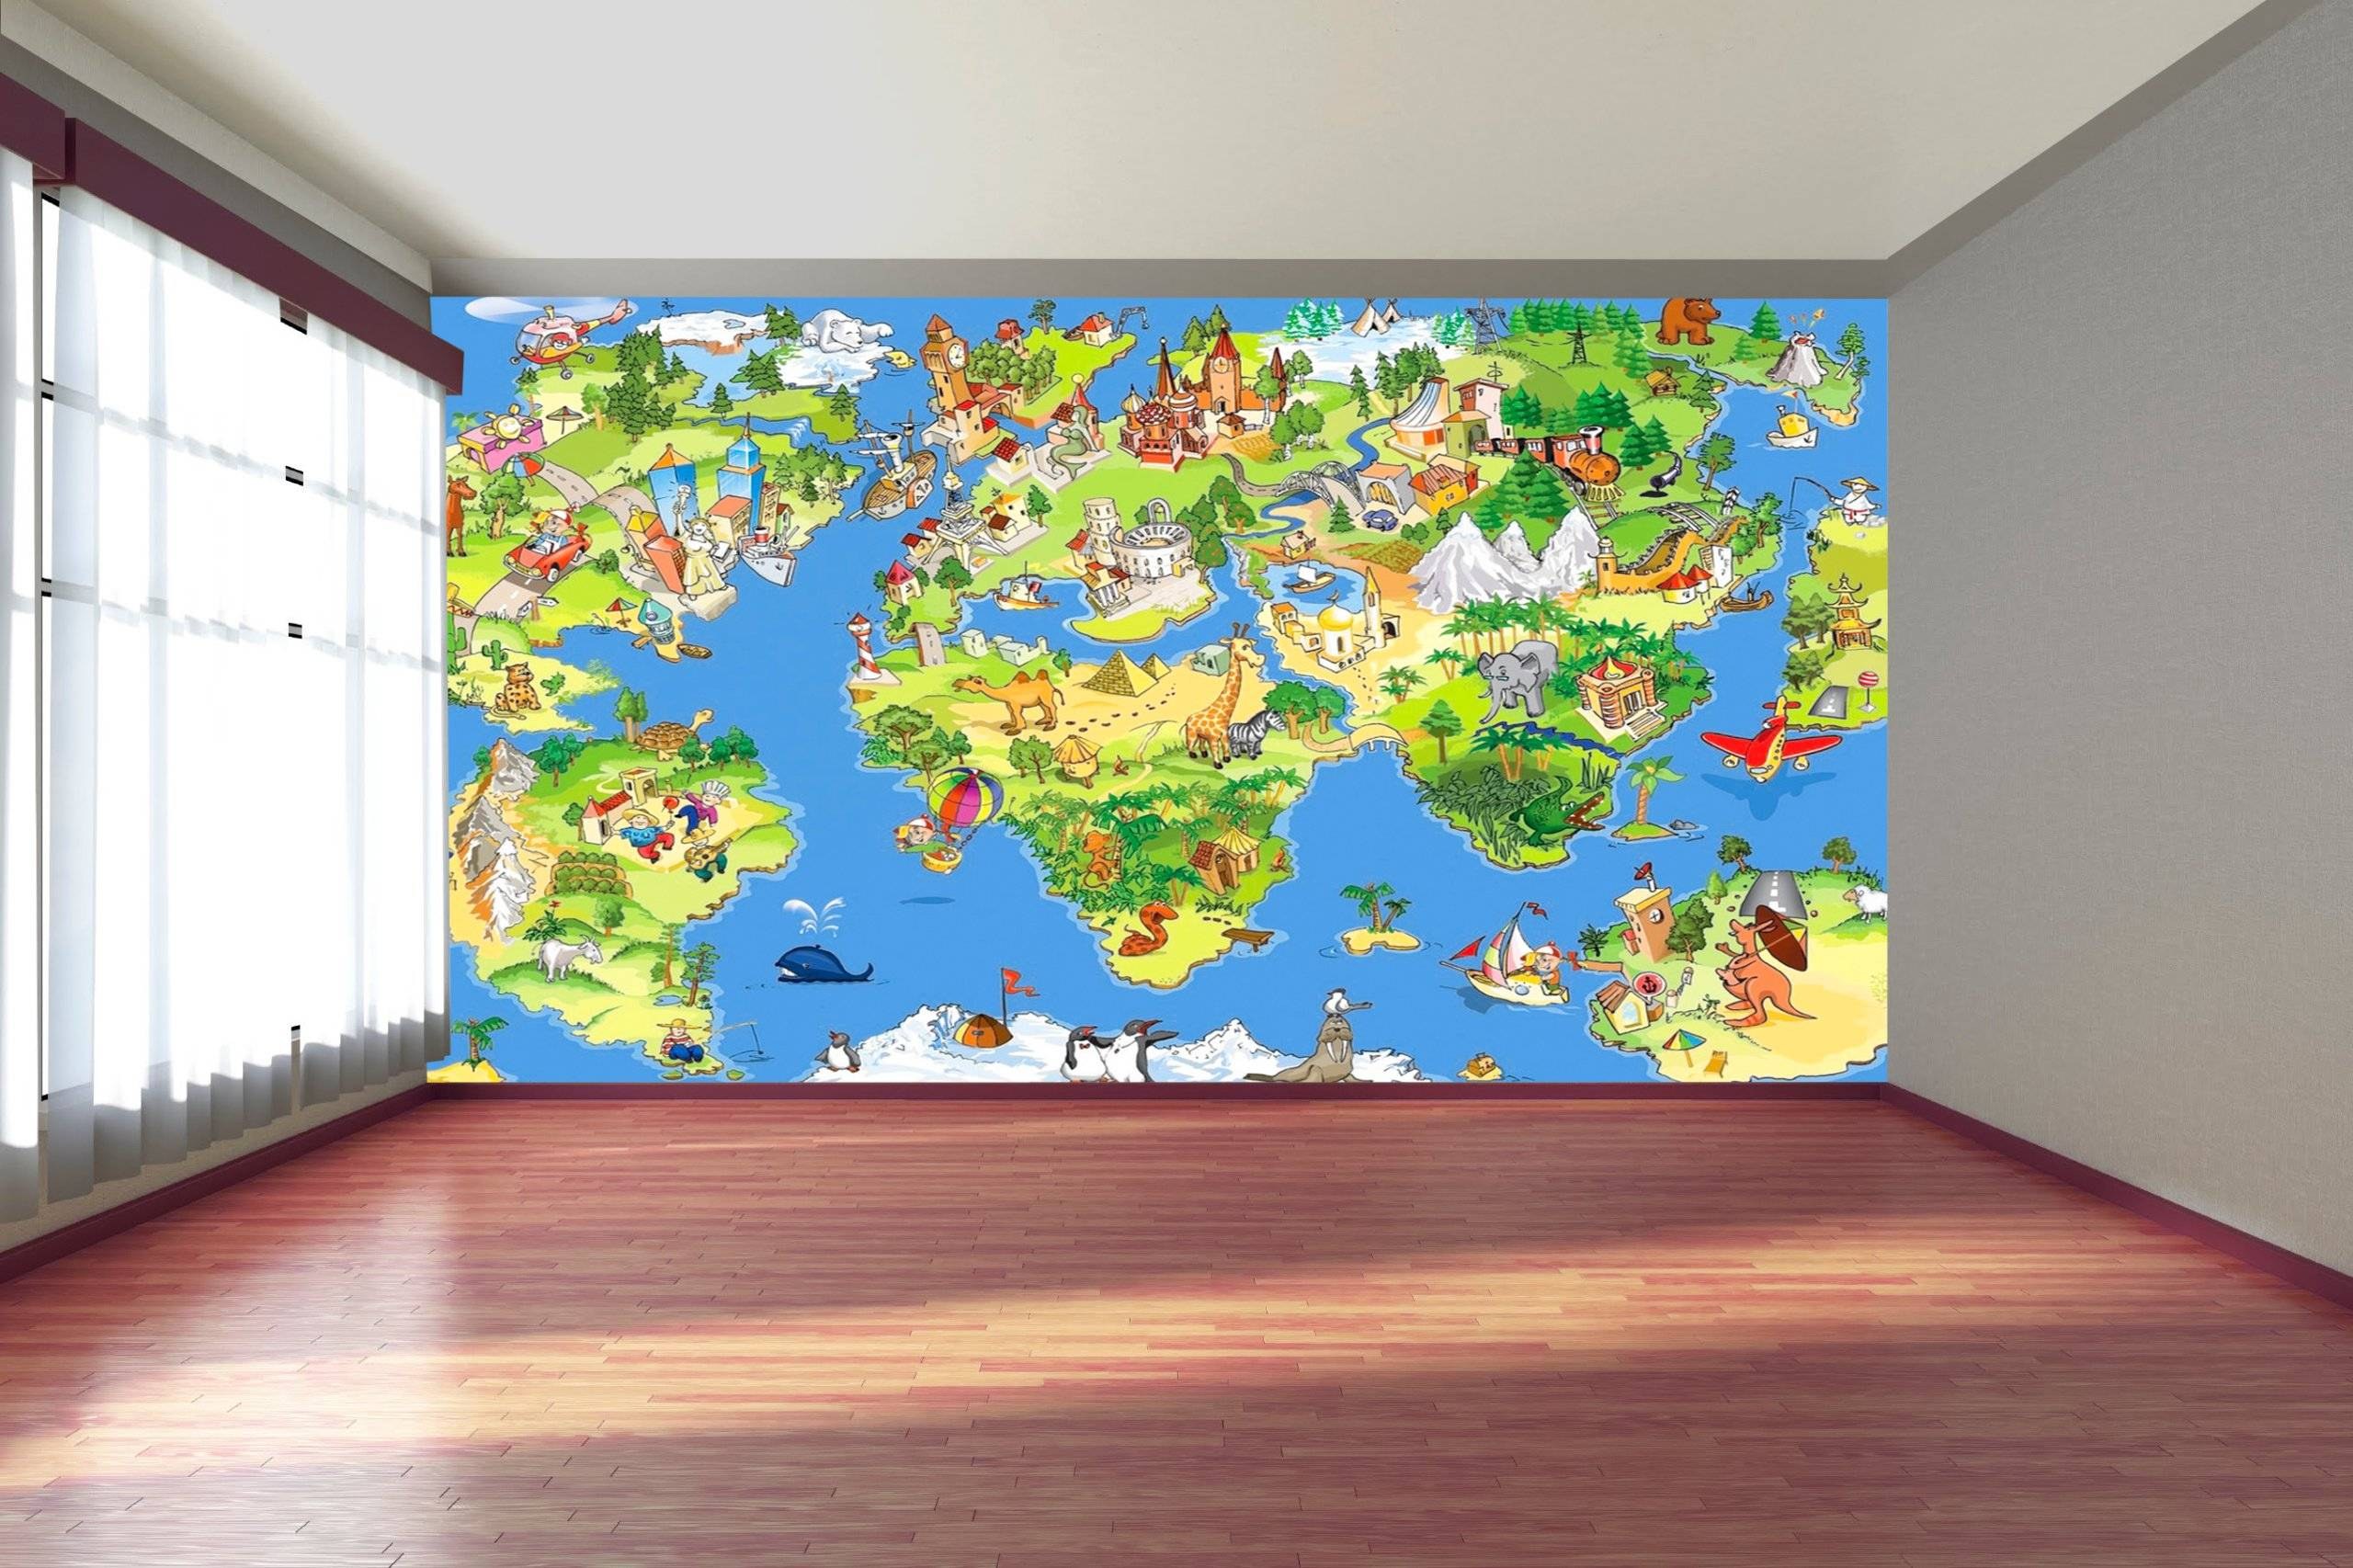 Настенная карта мира для детей